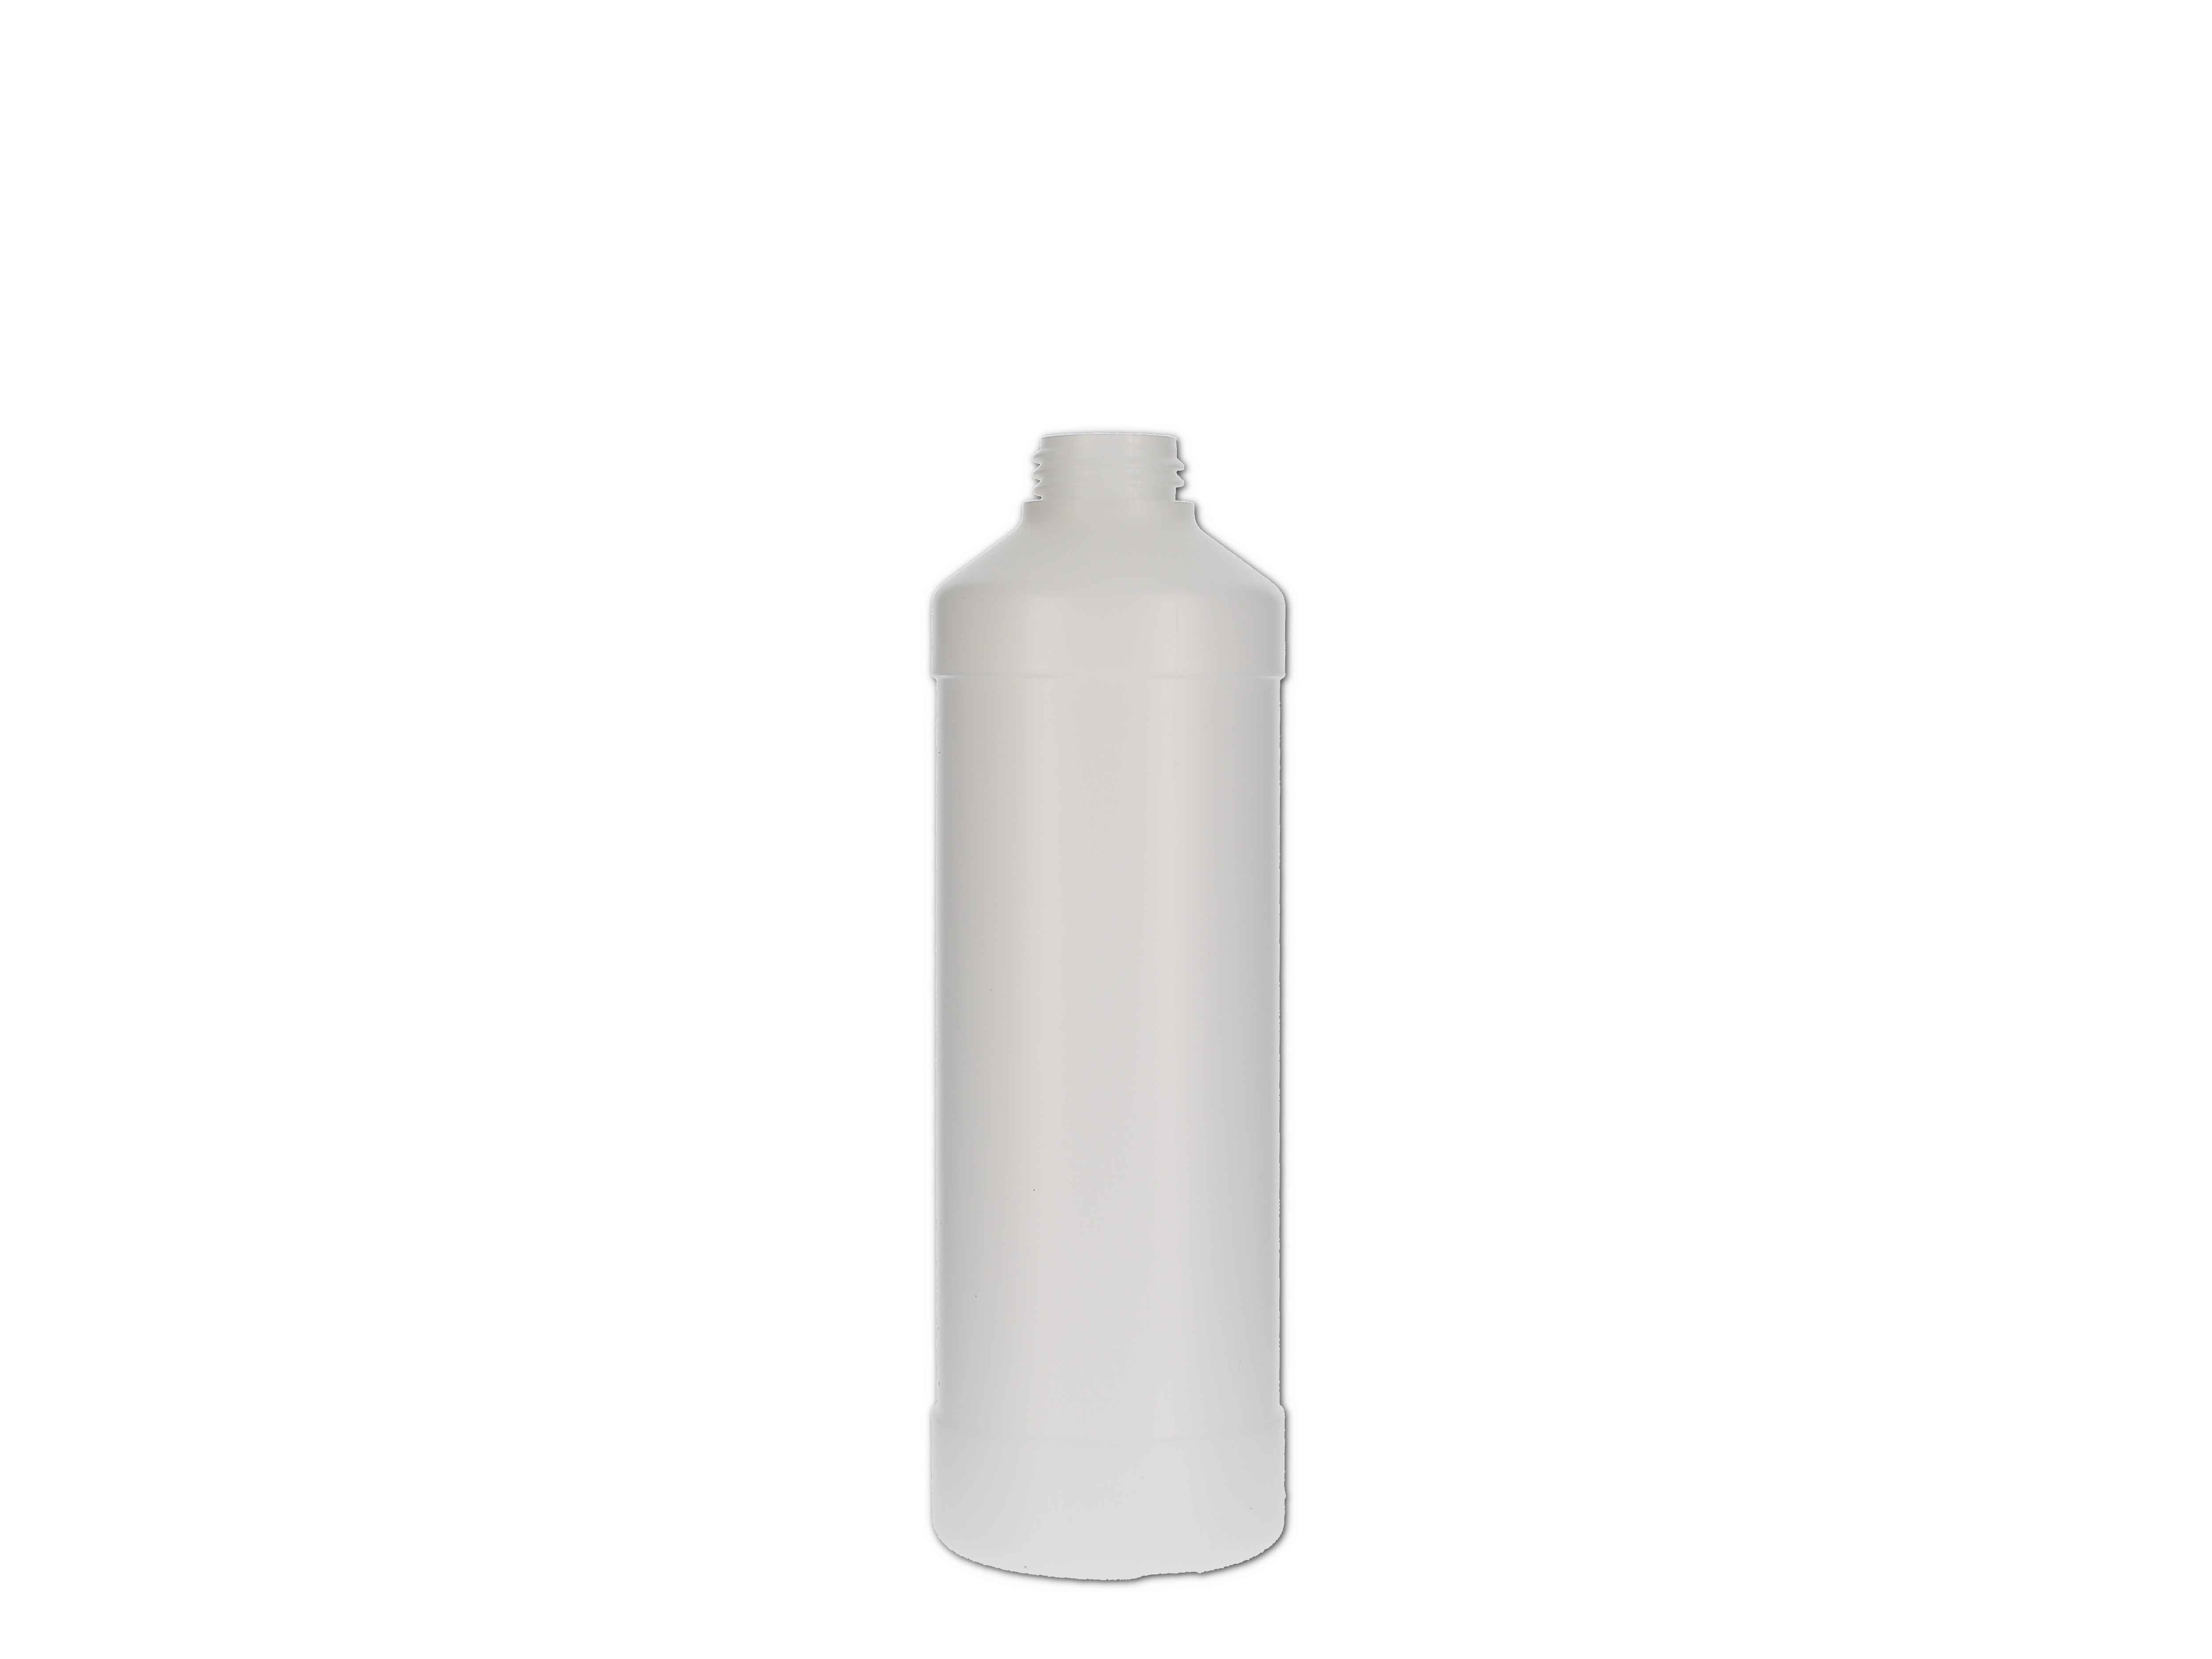    Kunststoff-Flasche rund, ohne Verschluss - 500ml